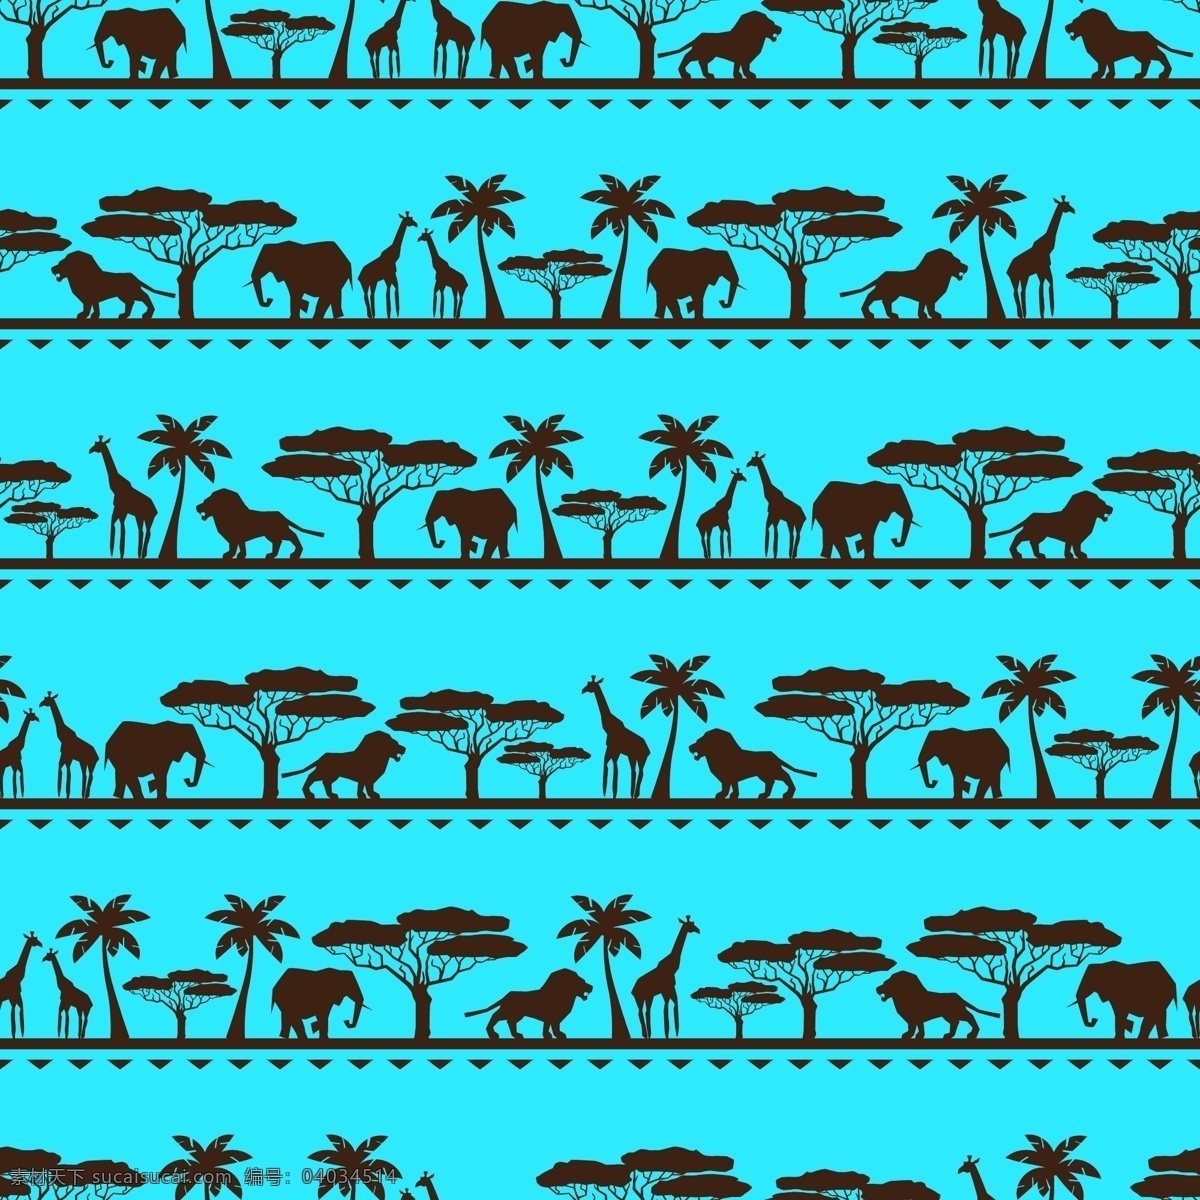 非洲 动物 矢量图 非洲动物 树木 剪影 大象 长颈鹿 狮子